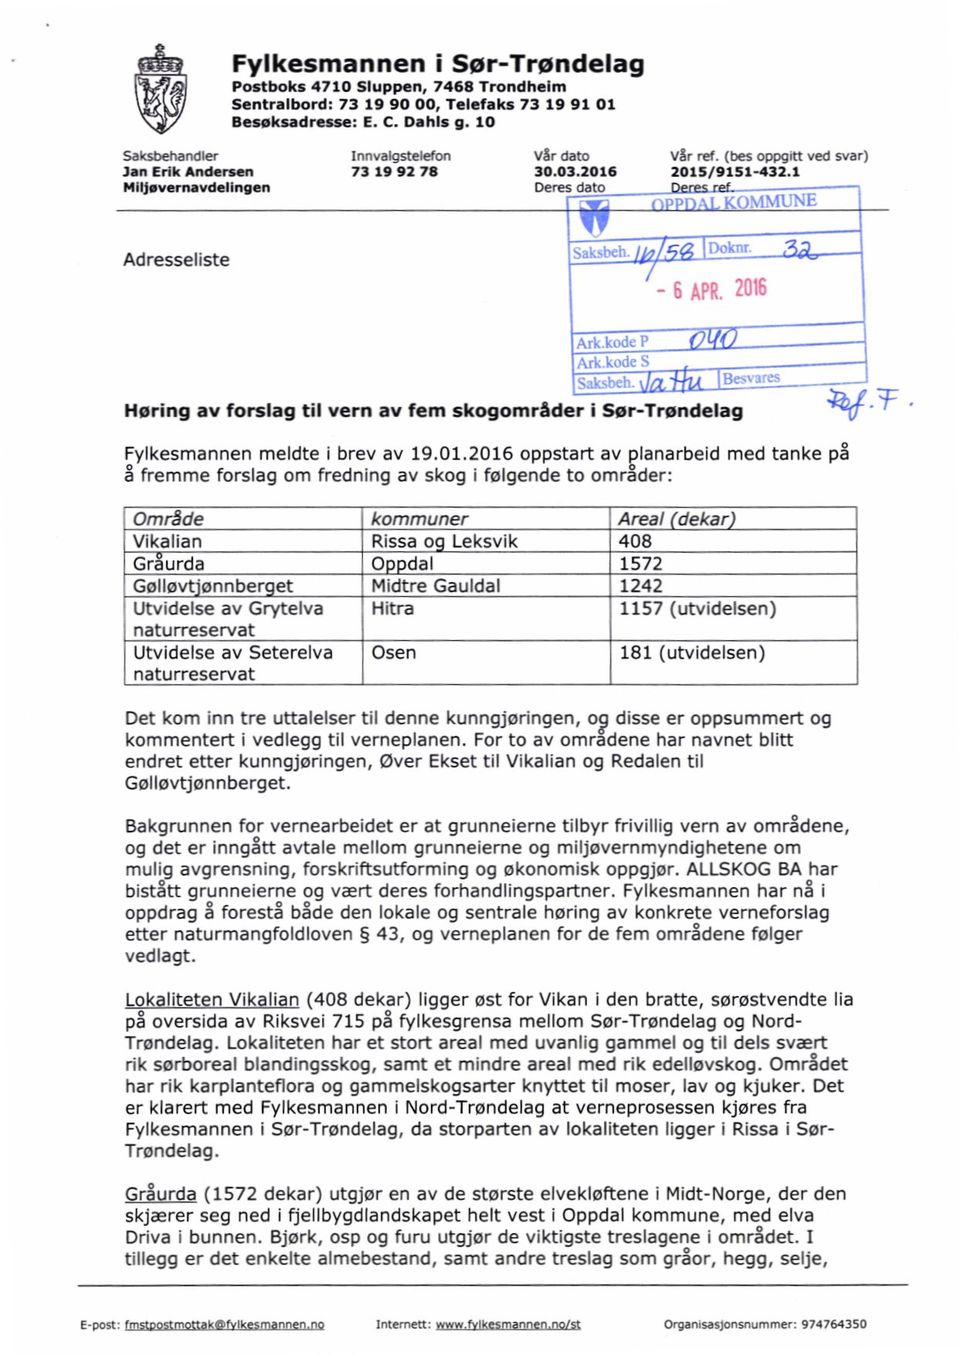 1 Deres dato PP1) L KOM Alk km, \ 1114 Høring av forslag til vern av fem skogområder i Ser-Trøndelag Fylkesmannen meldte i brev av 19.01.